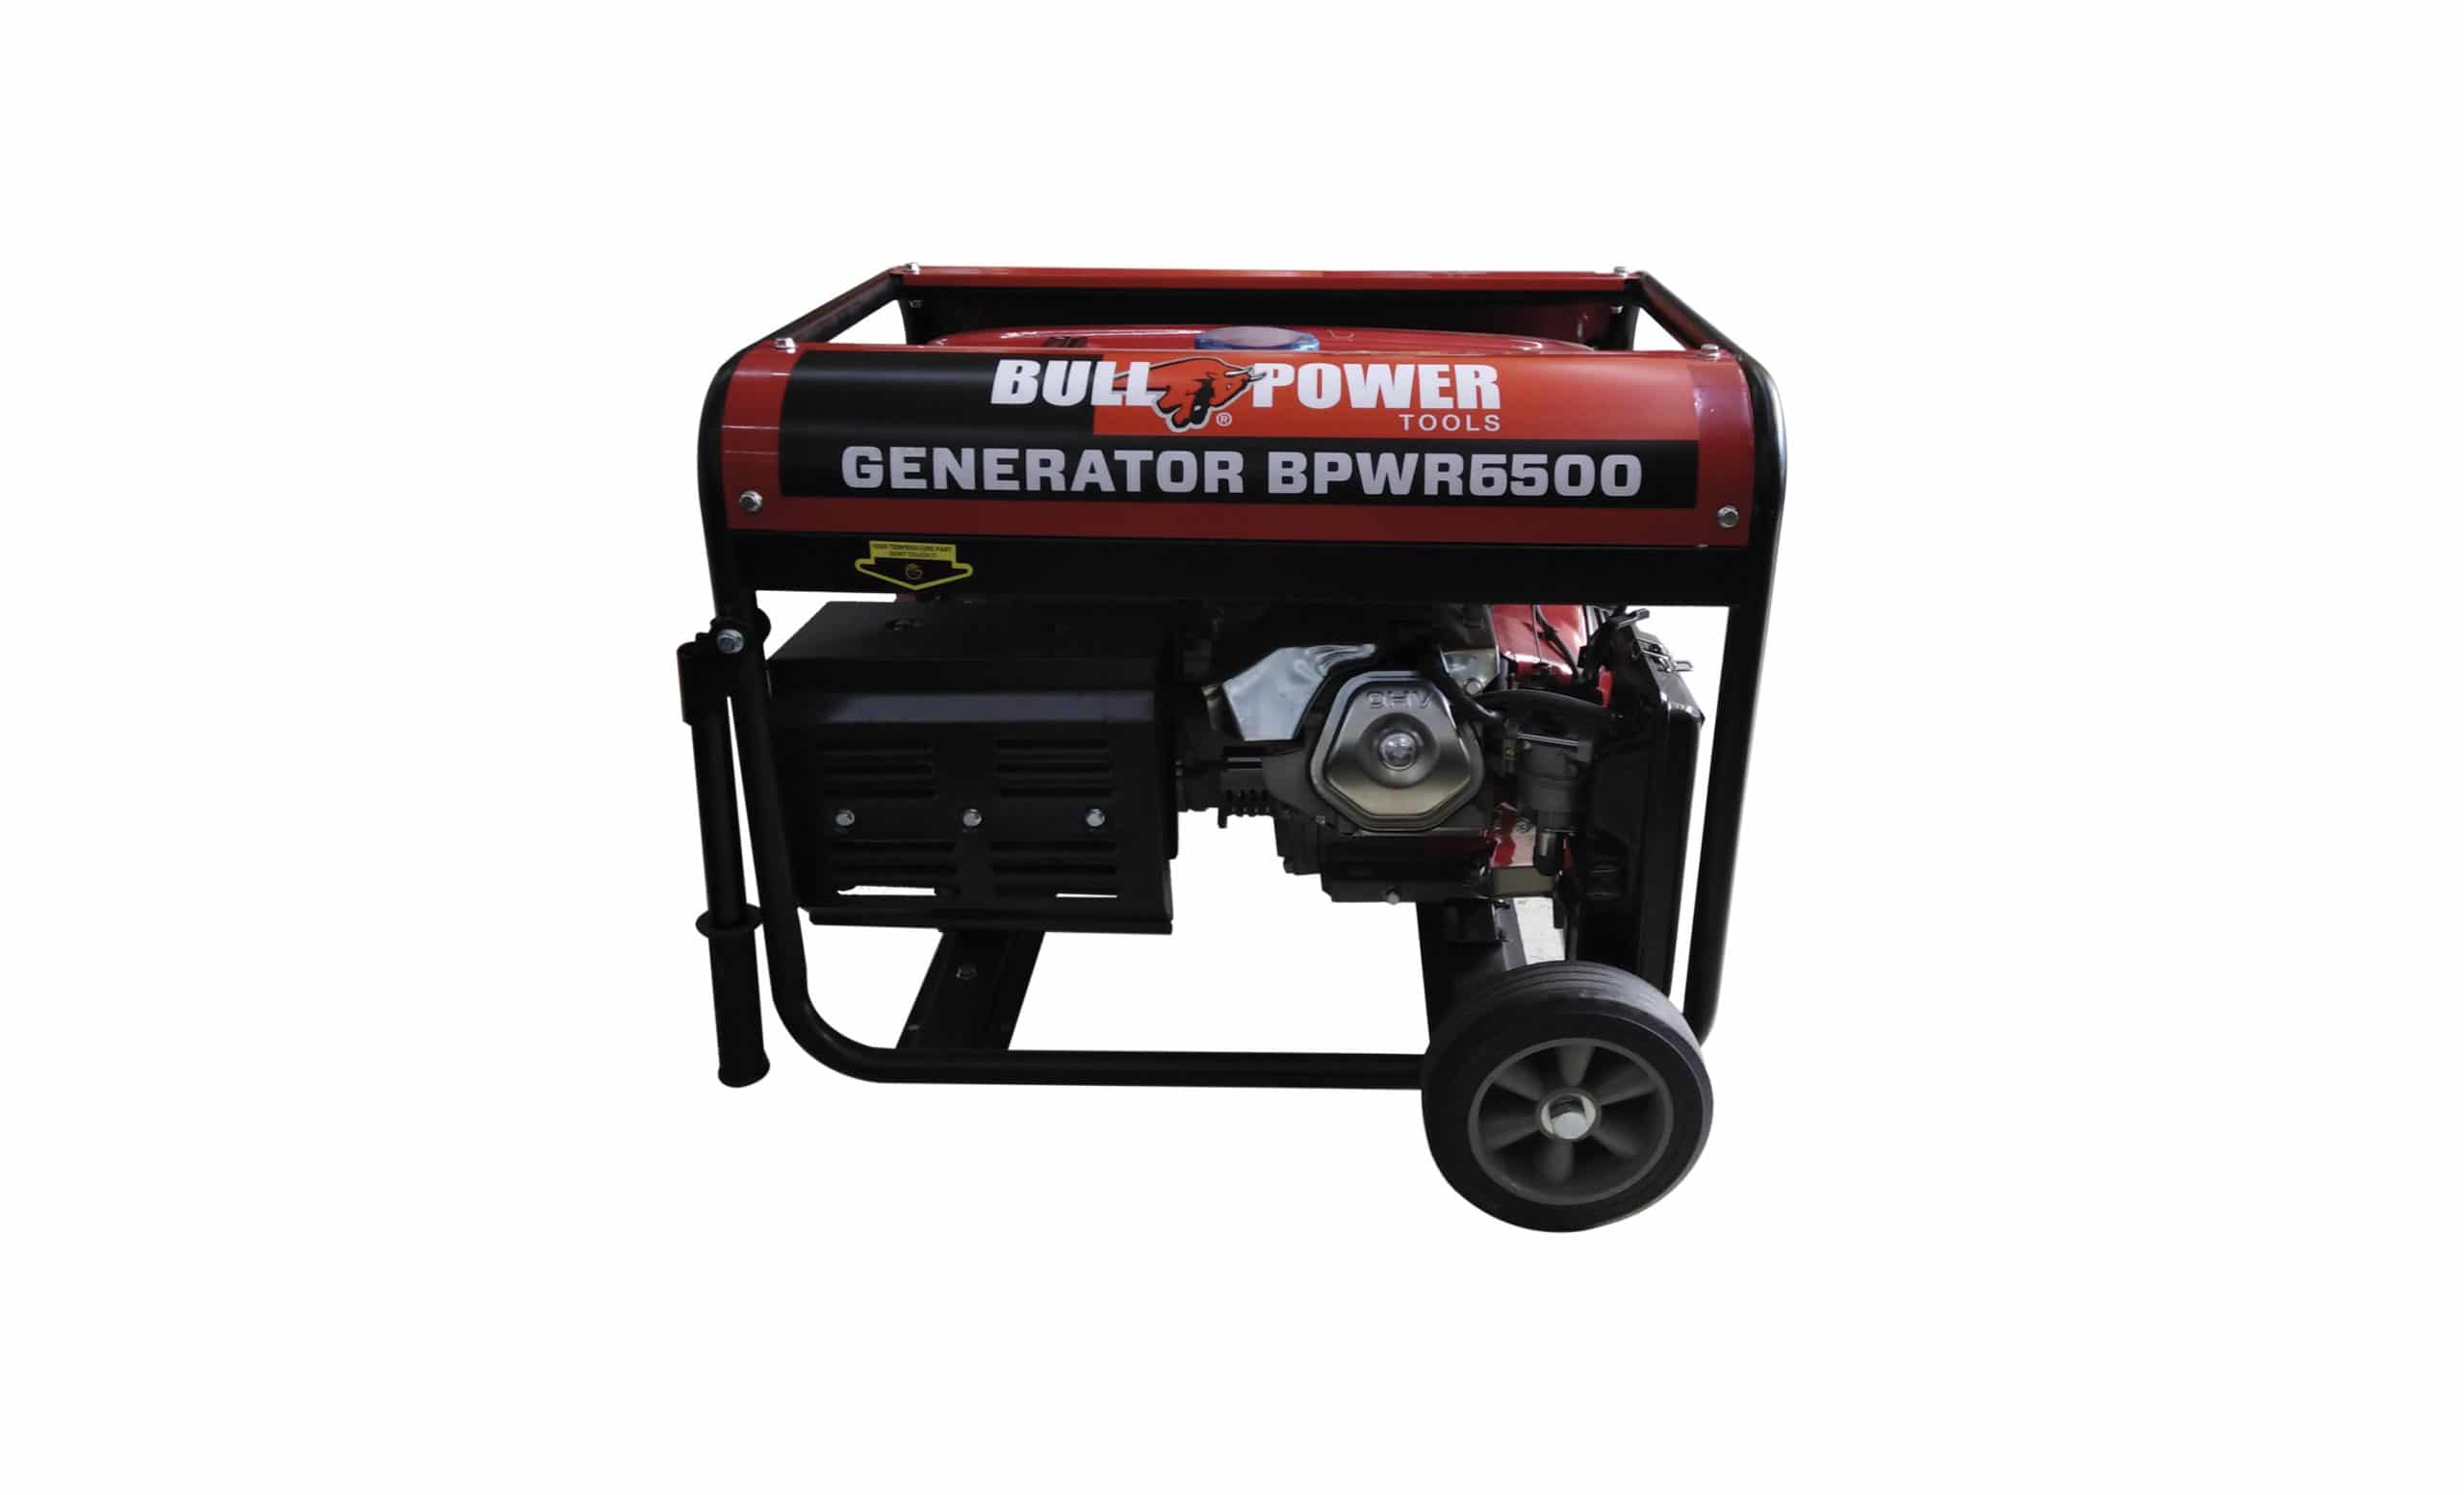 HC134049 - GENERADOR A GASOL 6500W 420CCBPWR6500 BULL POWER PORTATIL - BULL POWER